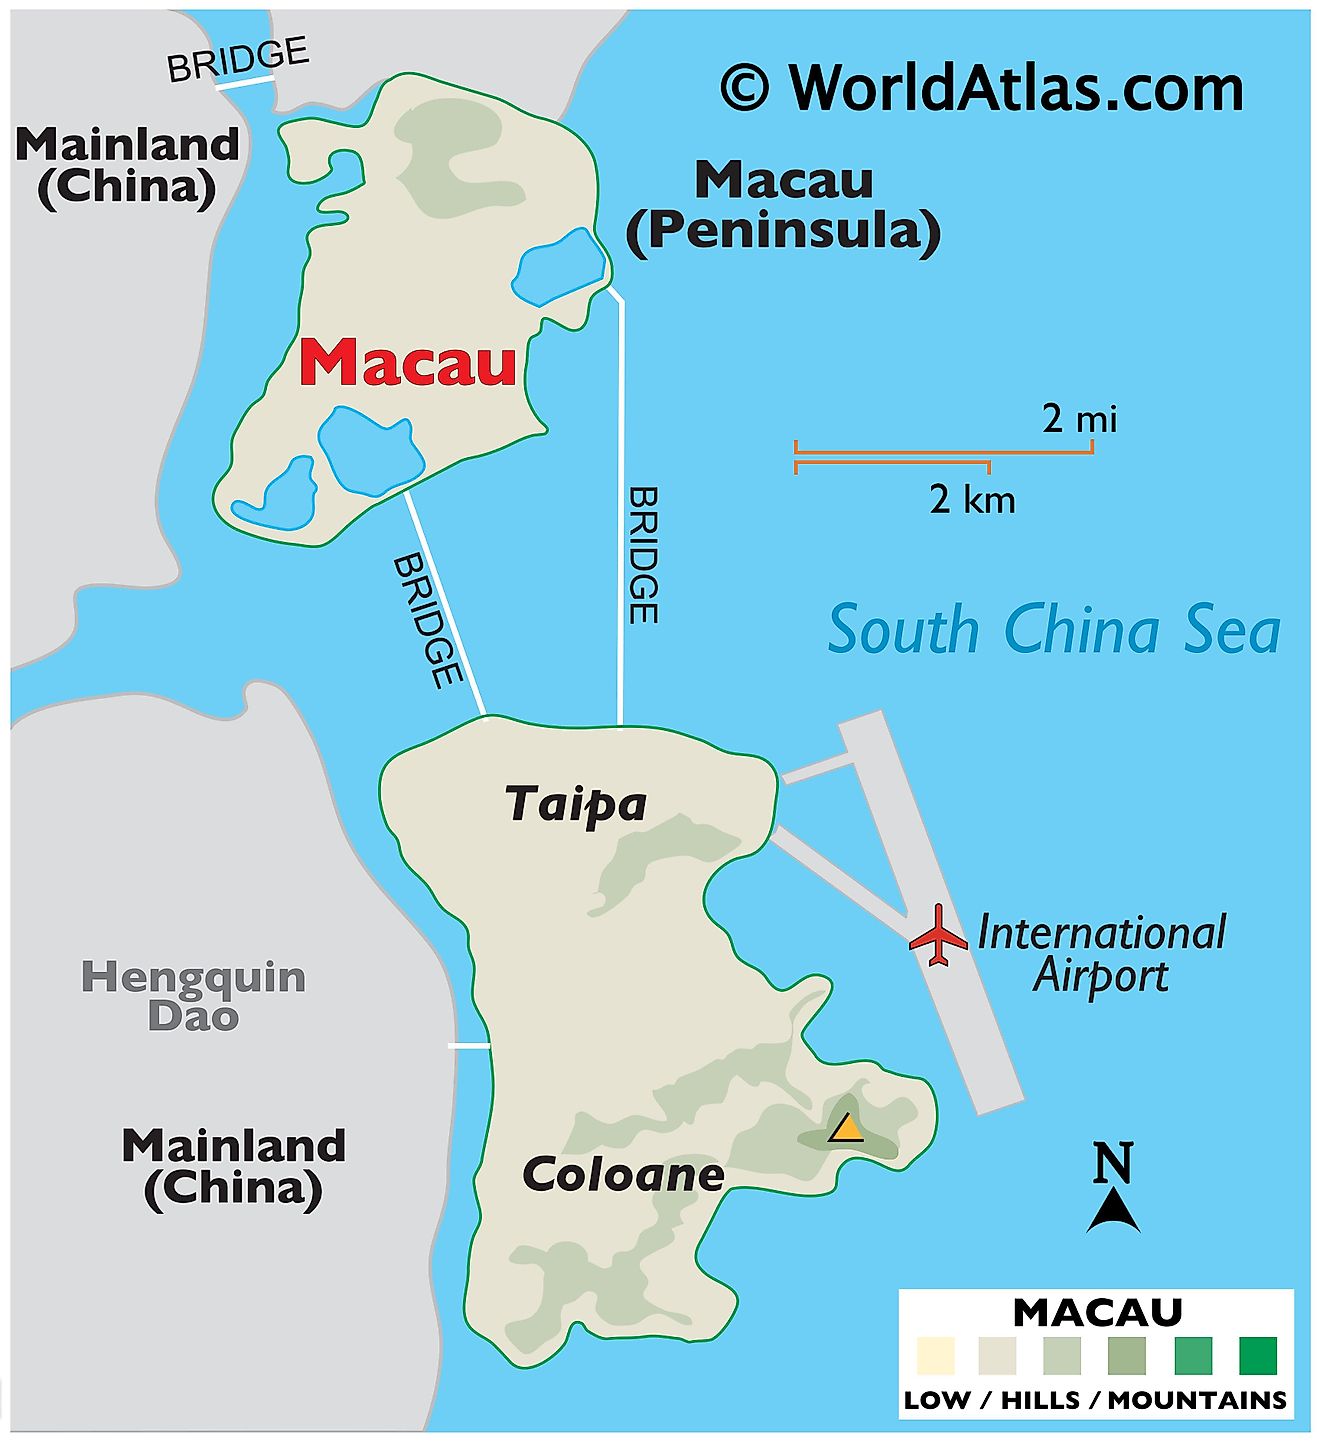 Mapa físico de Macao que muestra la península de Macao, las islas de Coloane y Taipa, los estados circundantes, etc.